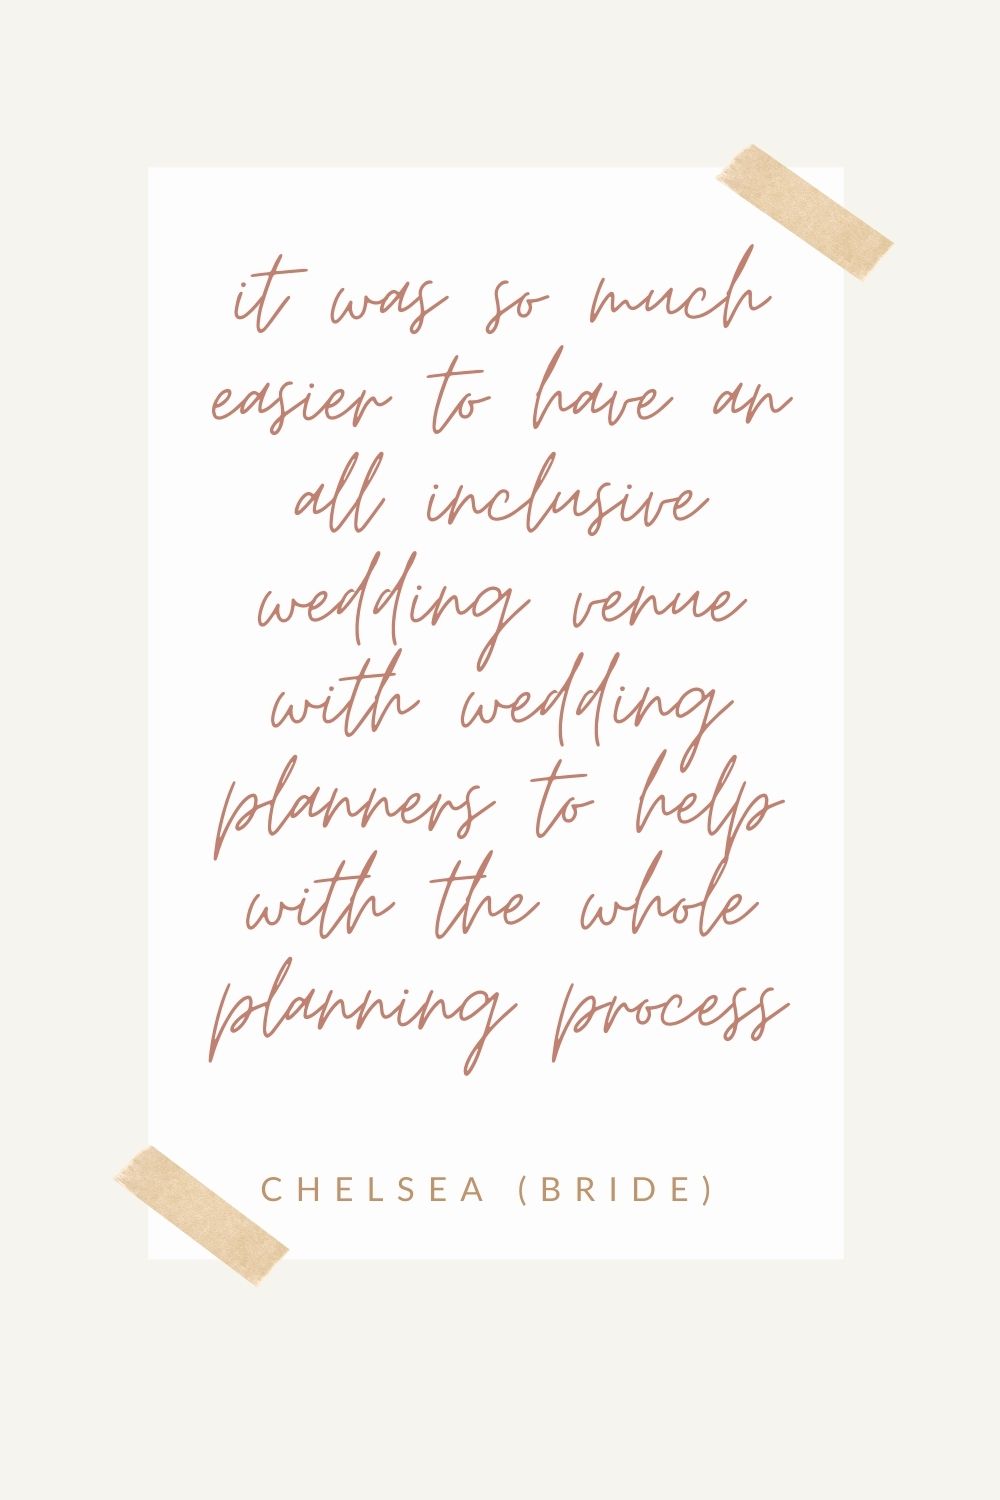 all inclusive wedding venue quote